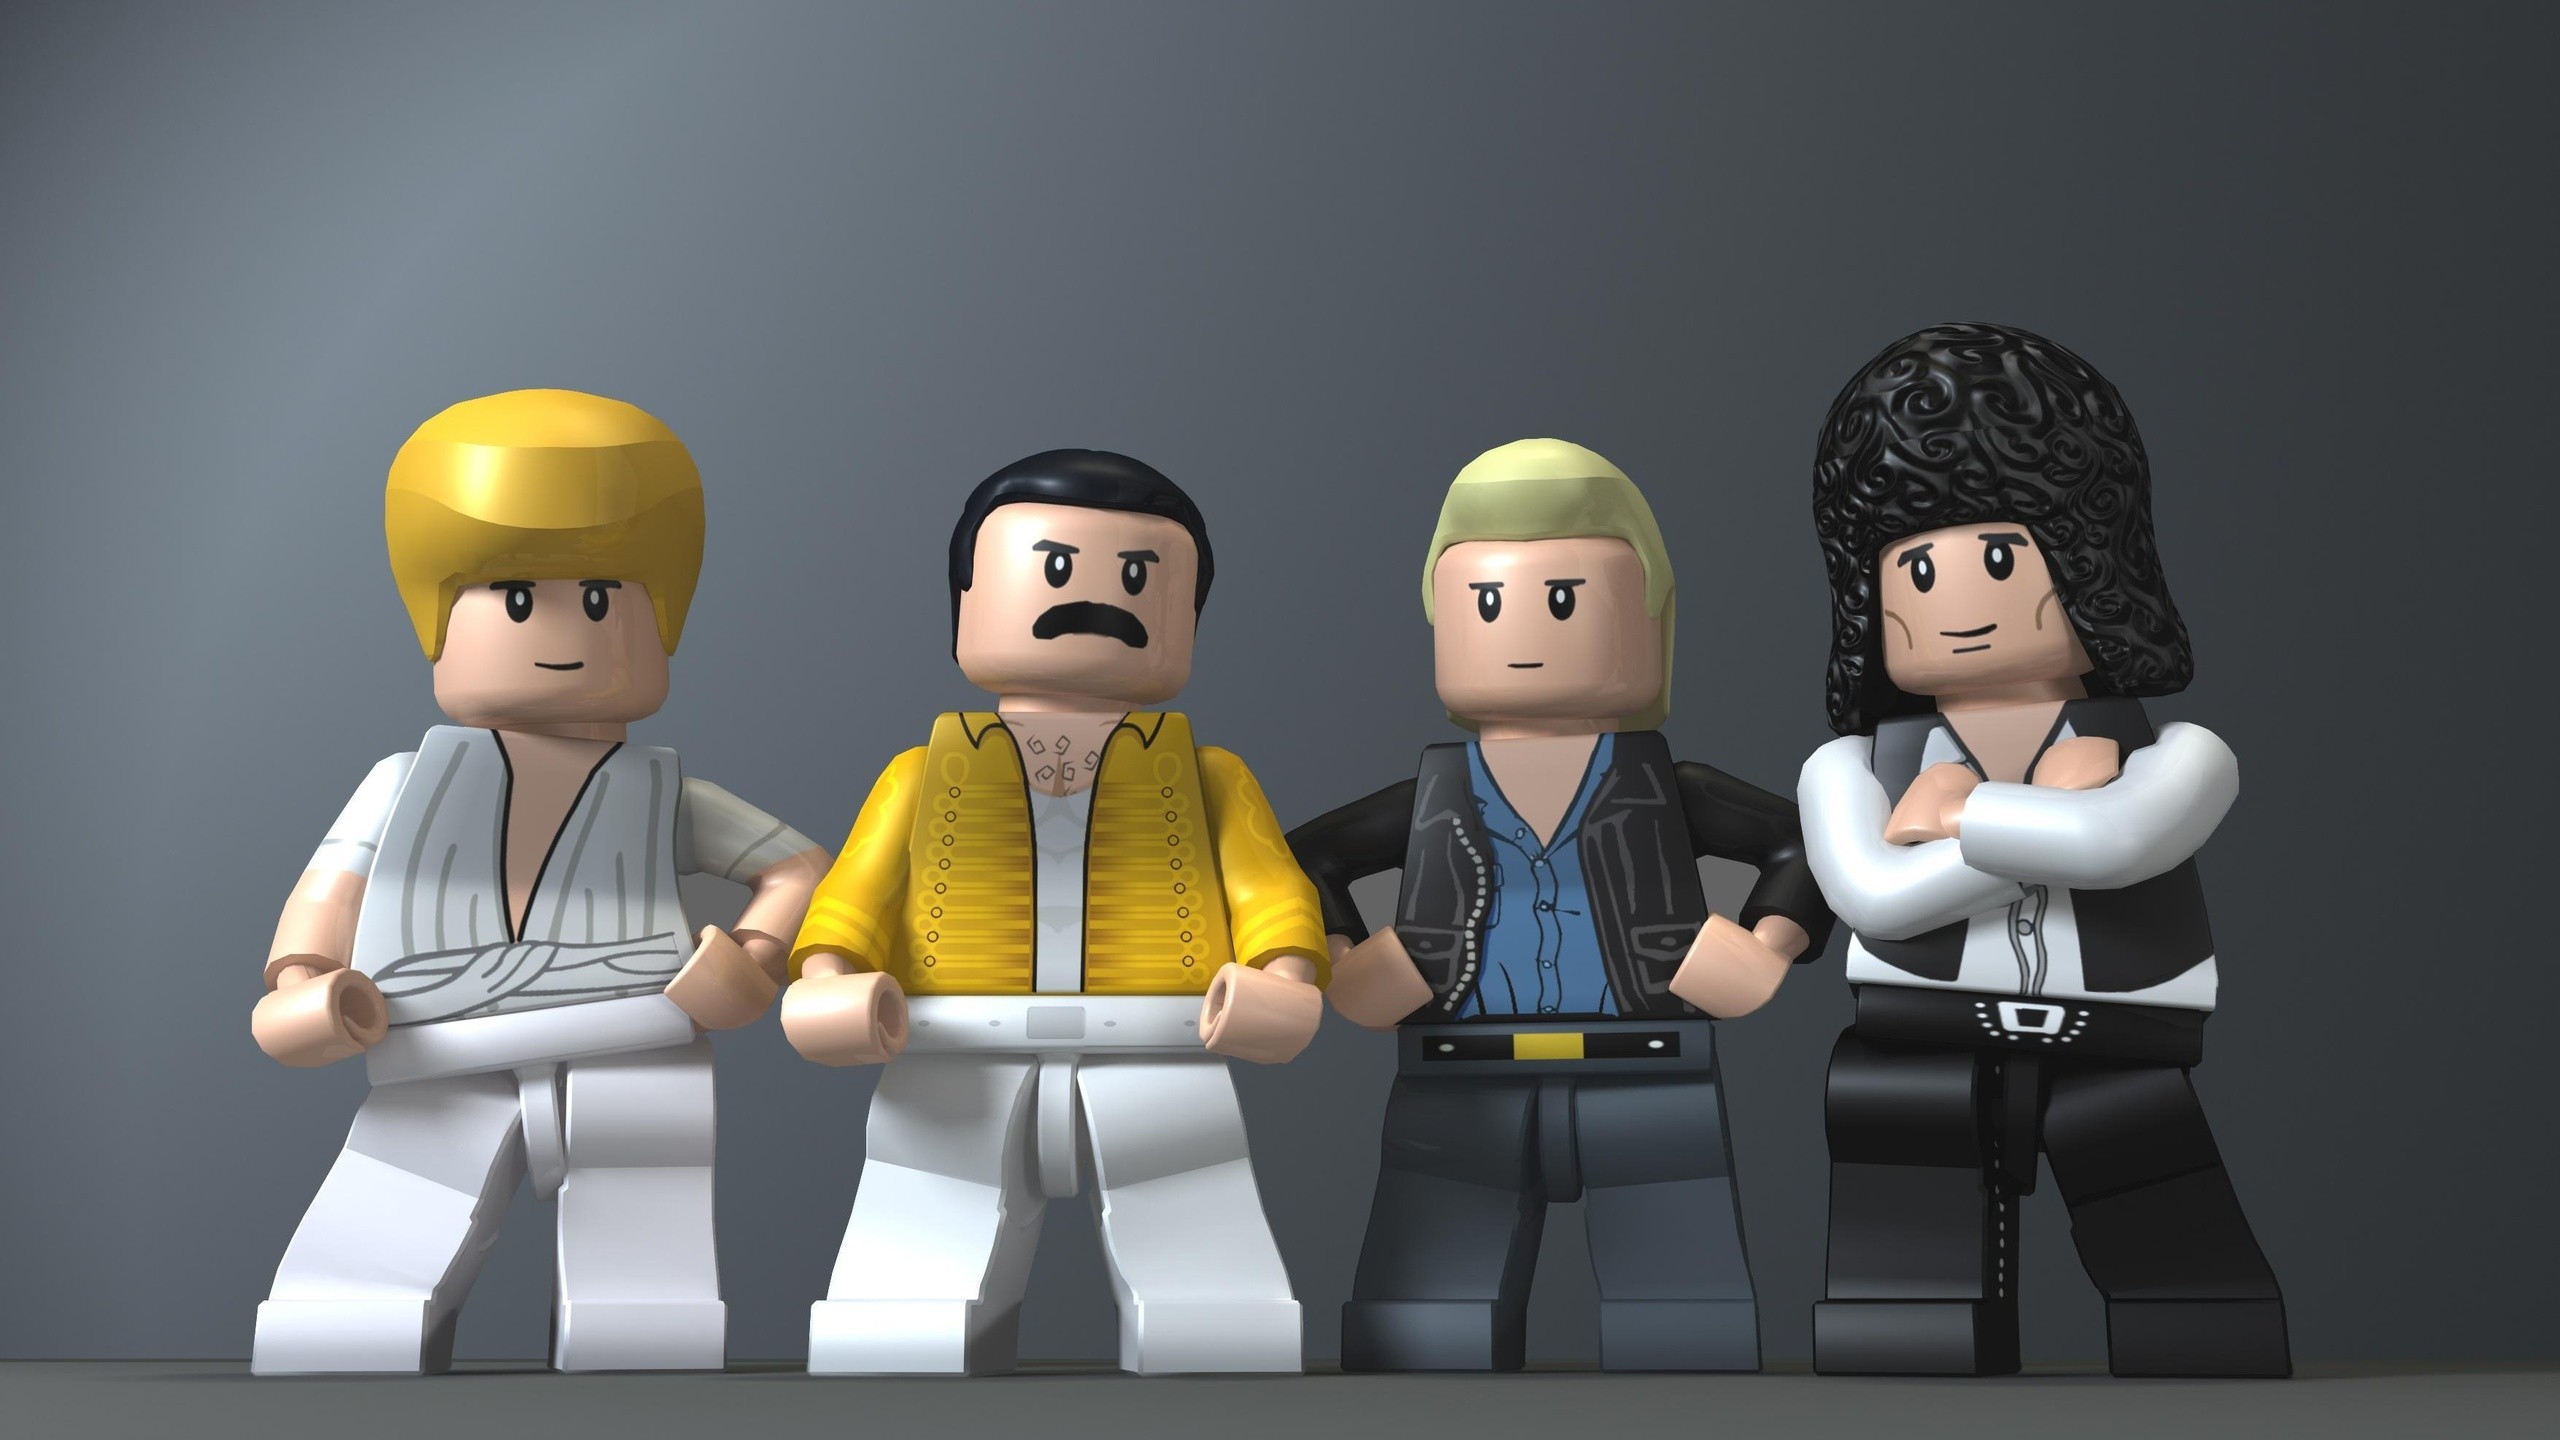 LEGO Freddie Mercury Queen 2560x1440